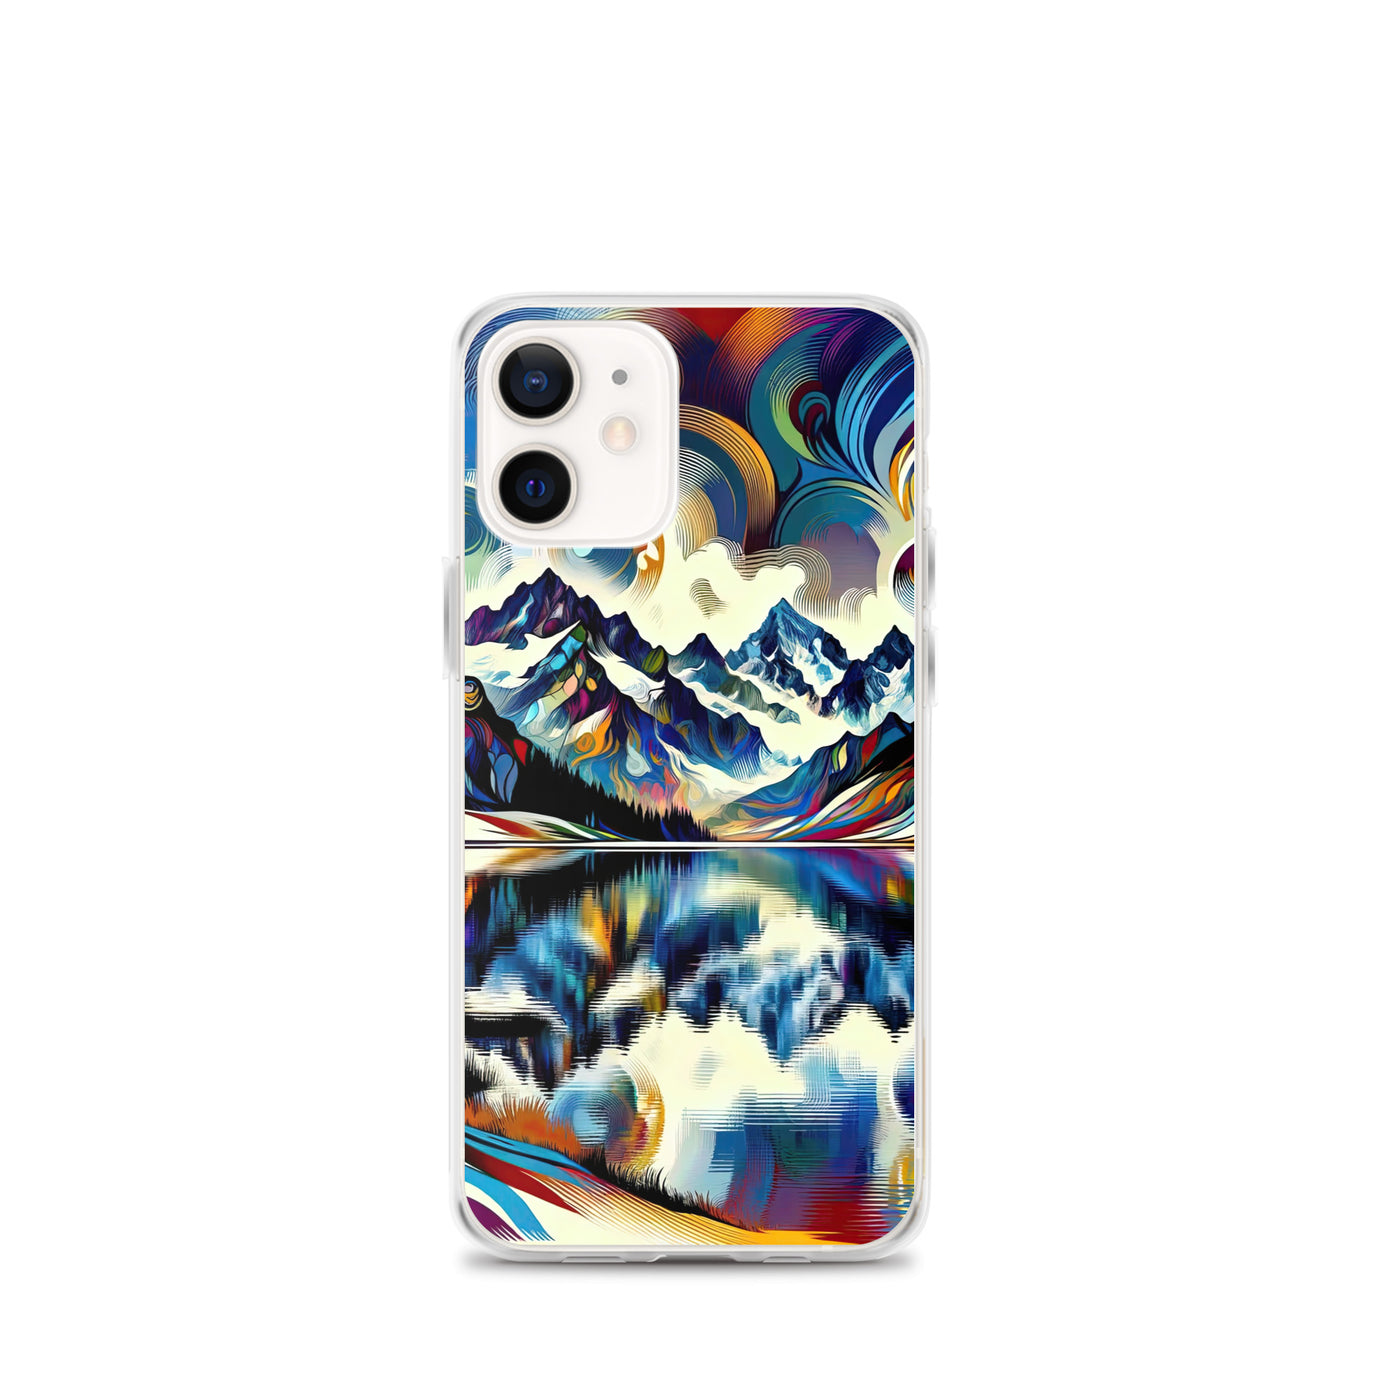 Alpensee im Zentrum eines abstrakt-expressionistischen Alpen-Kunstwerks - iPhone Schutzhülle (durchsichtig) berge xxx yyy zzz iPhone 12 mini